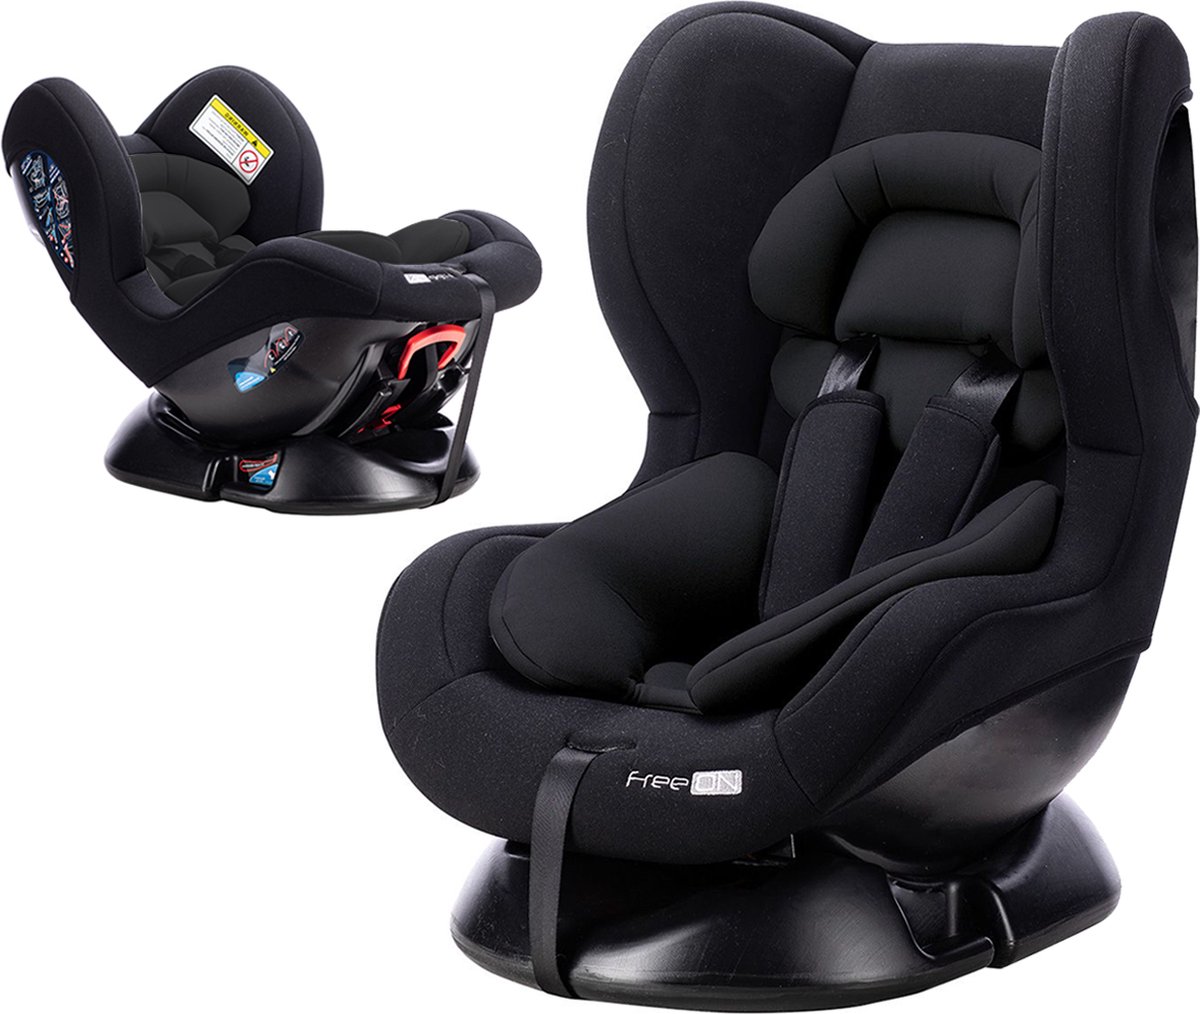 FreeON autostoel Tipo Zwart (0-18kg) - Groep 0+1 autostoel voor kinderen van 0 tot 4 jaar